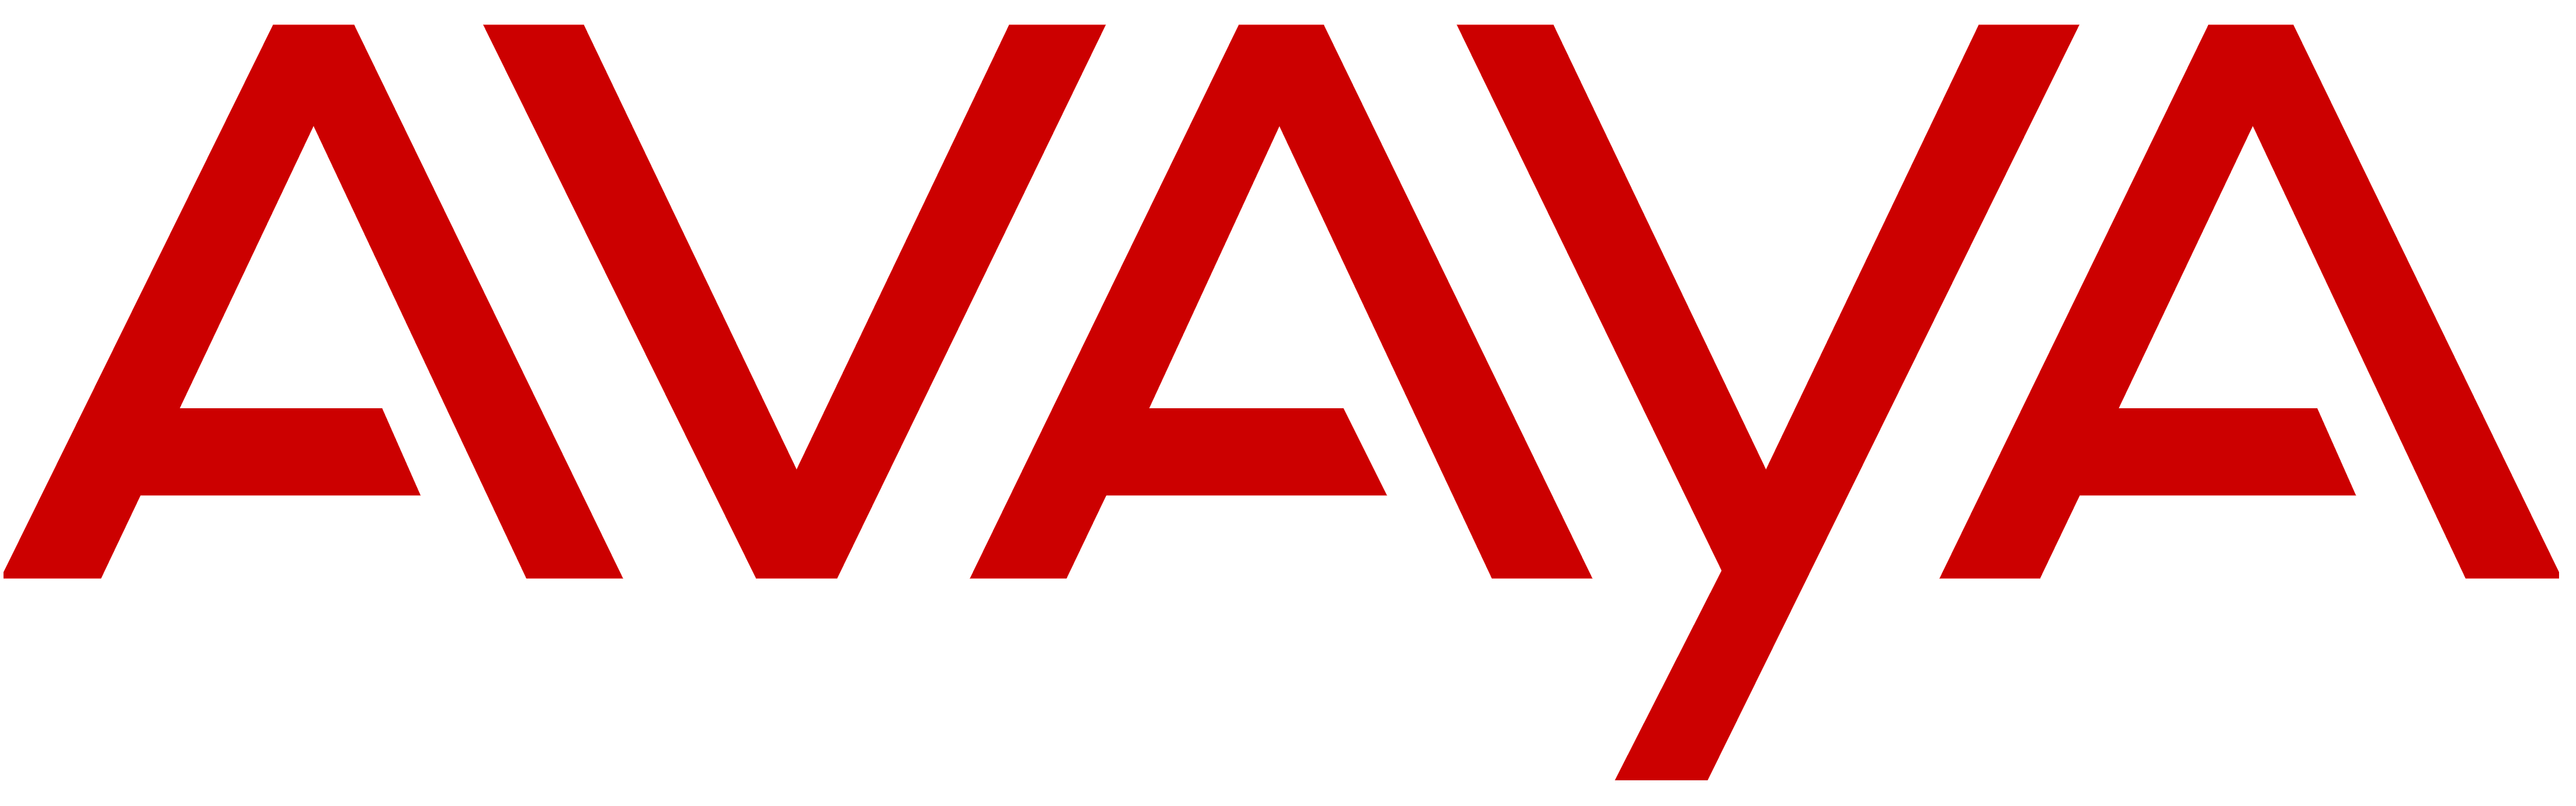 Avaya_logo.png